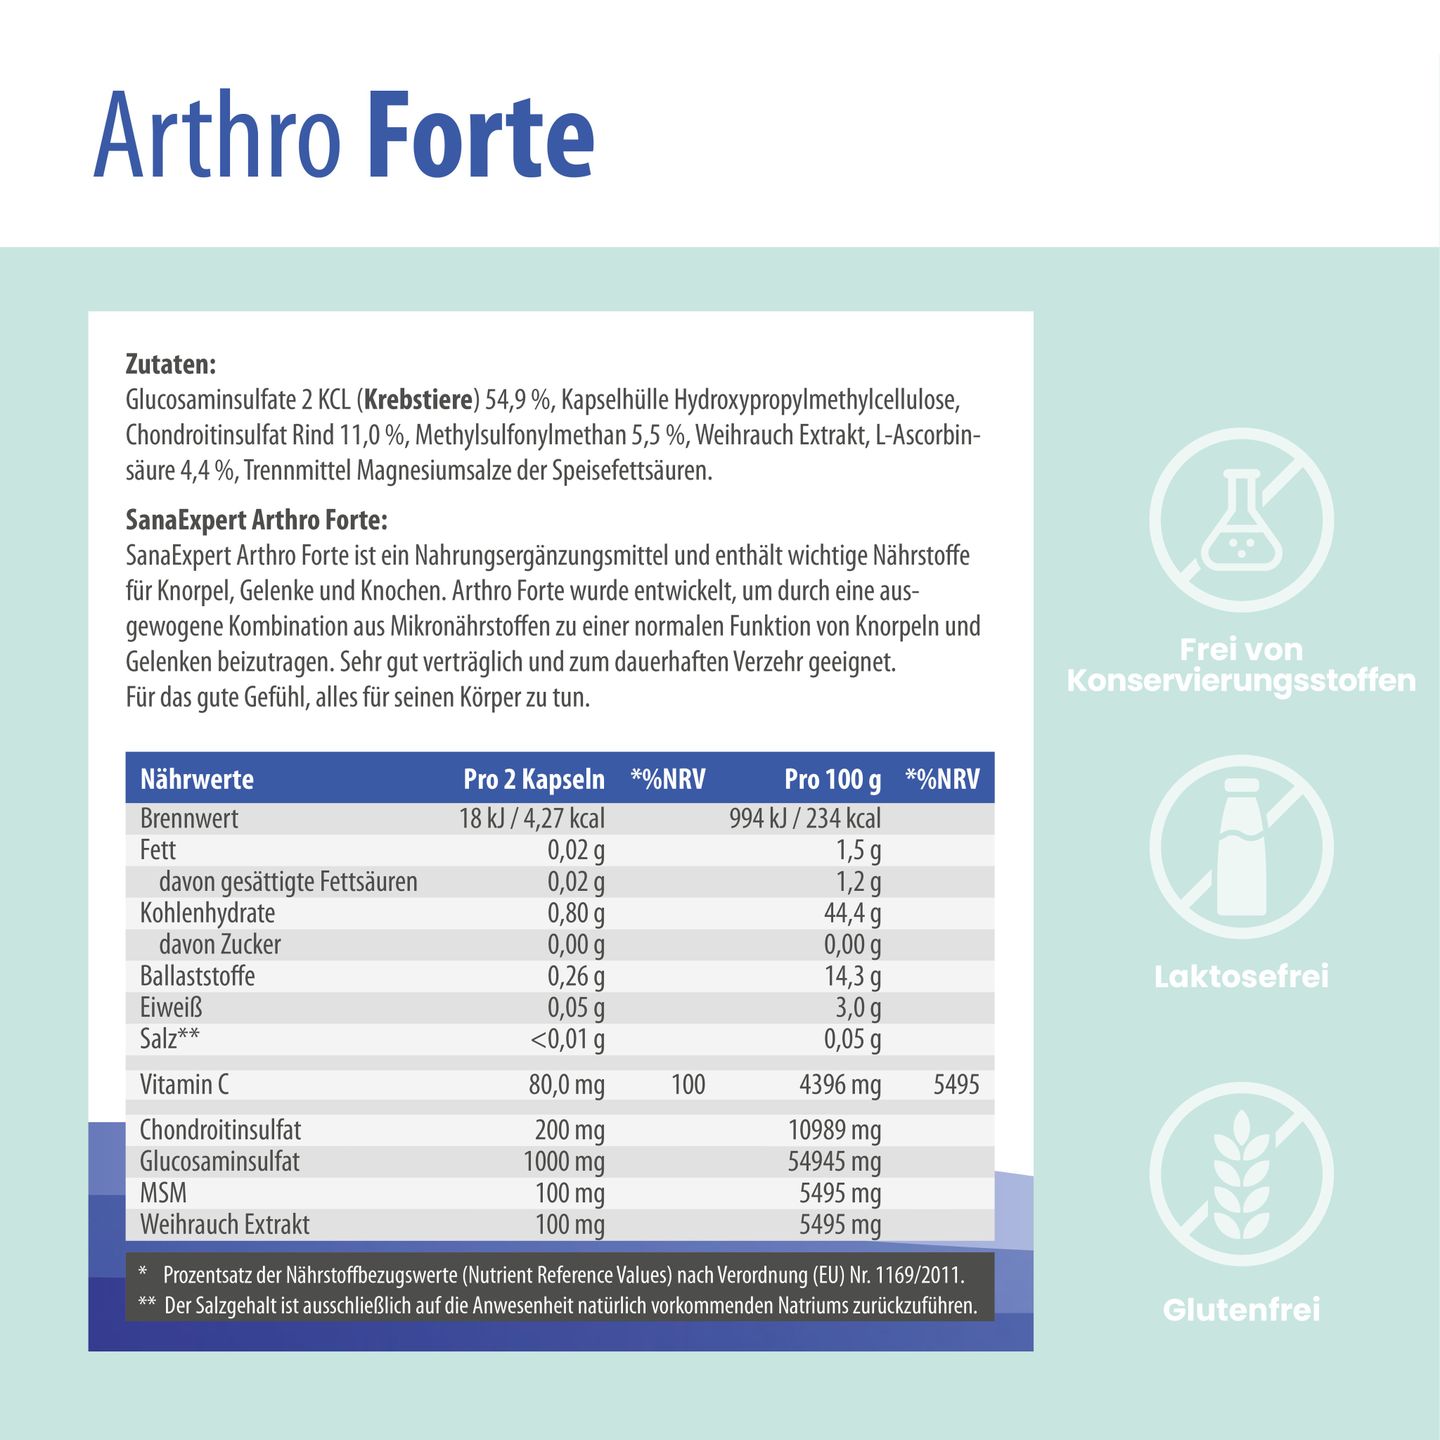 Detailansicht der SanaExpert Arthro Forte Verpackung mit Informationen zu Inhaltsstoffen und Nährwerten, die die Zusammensetzung und gesundheitlichen Vorteile des Produkts betont.